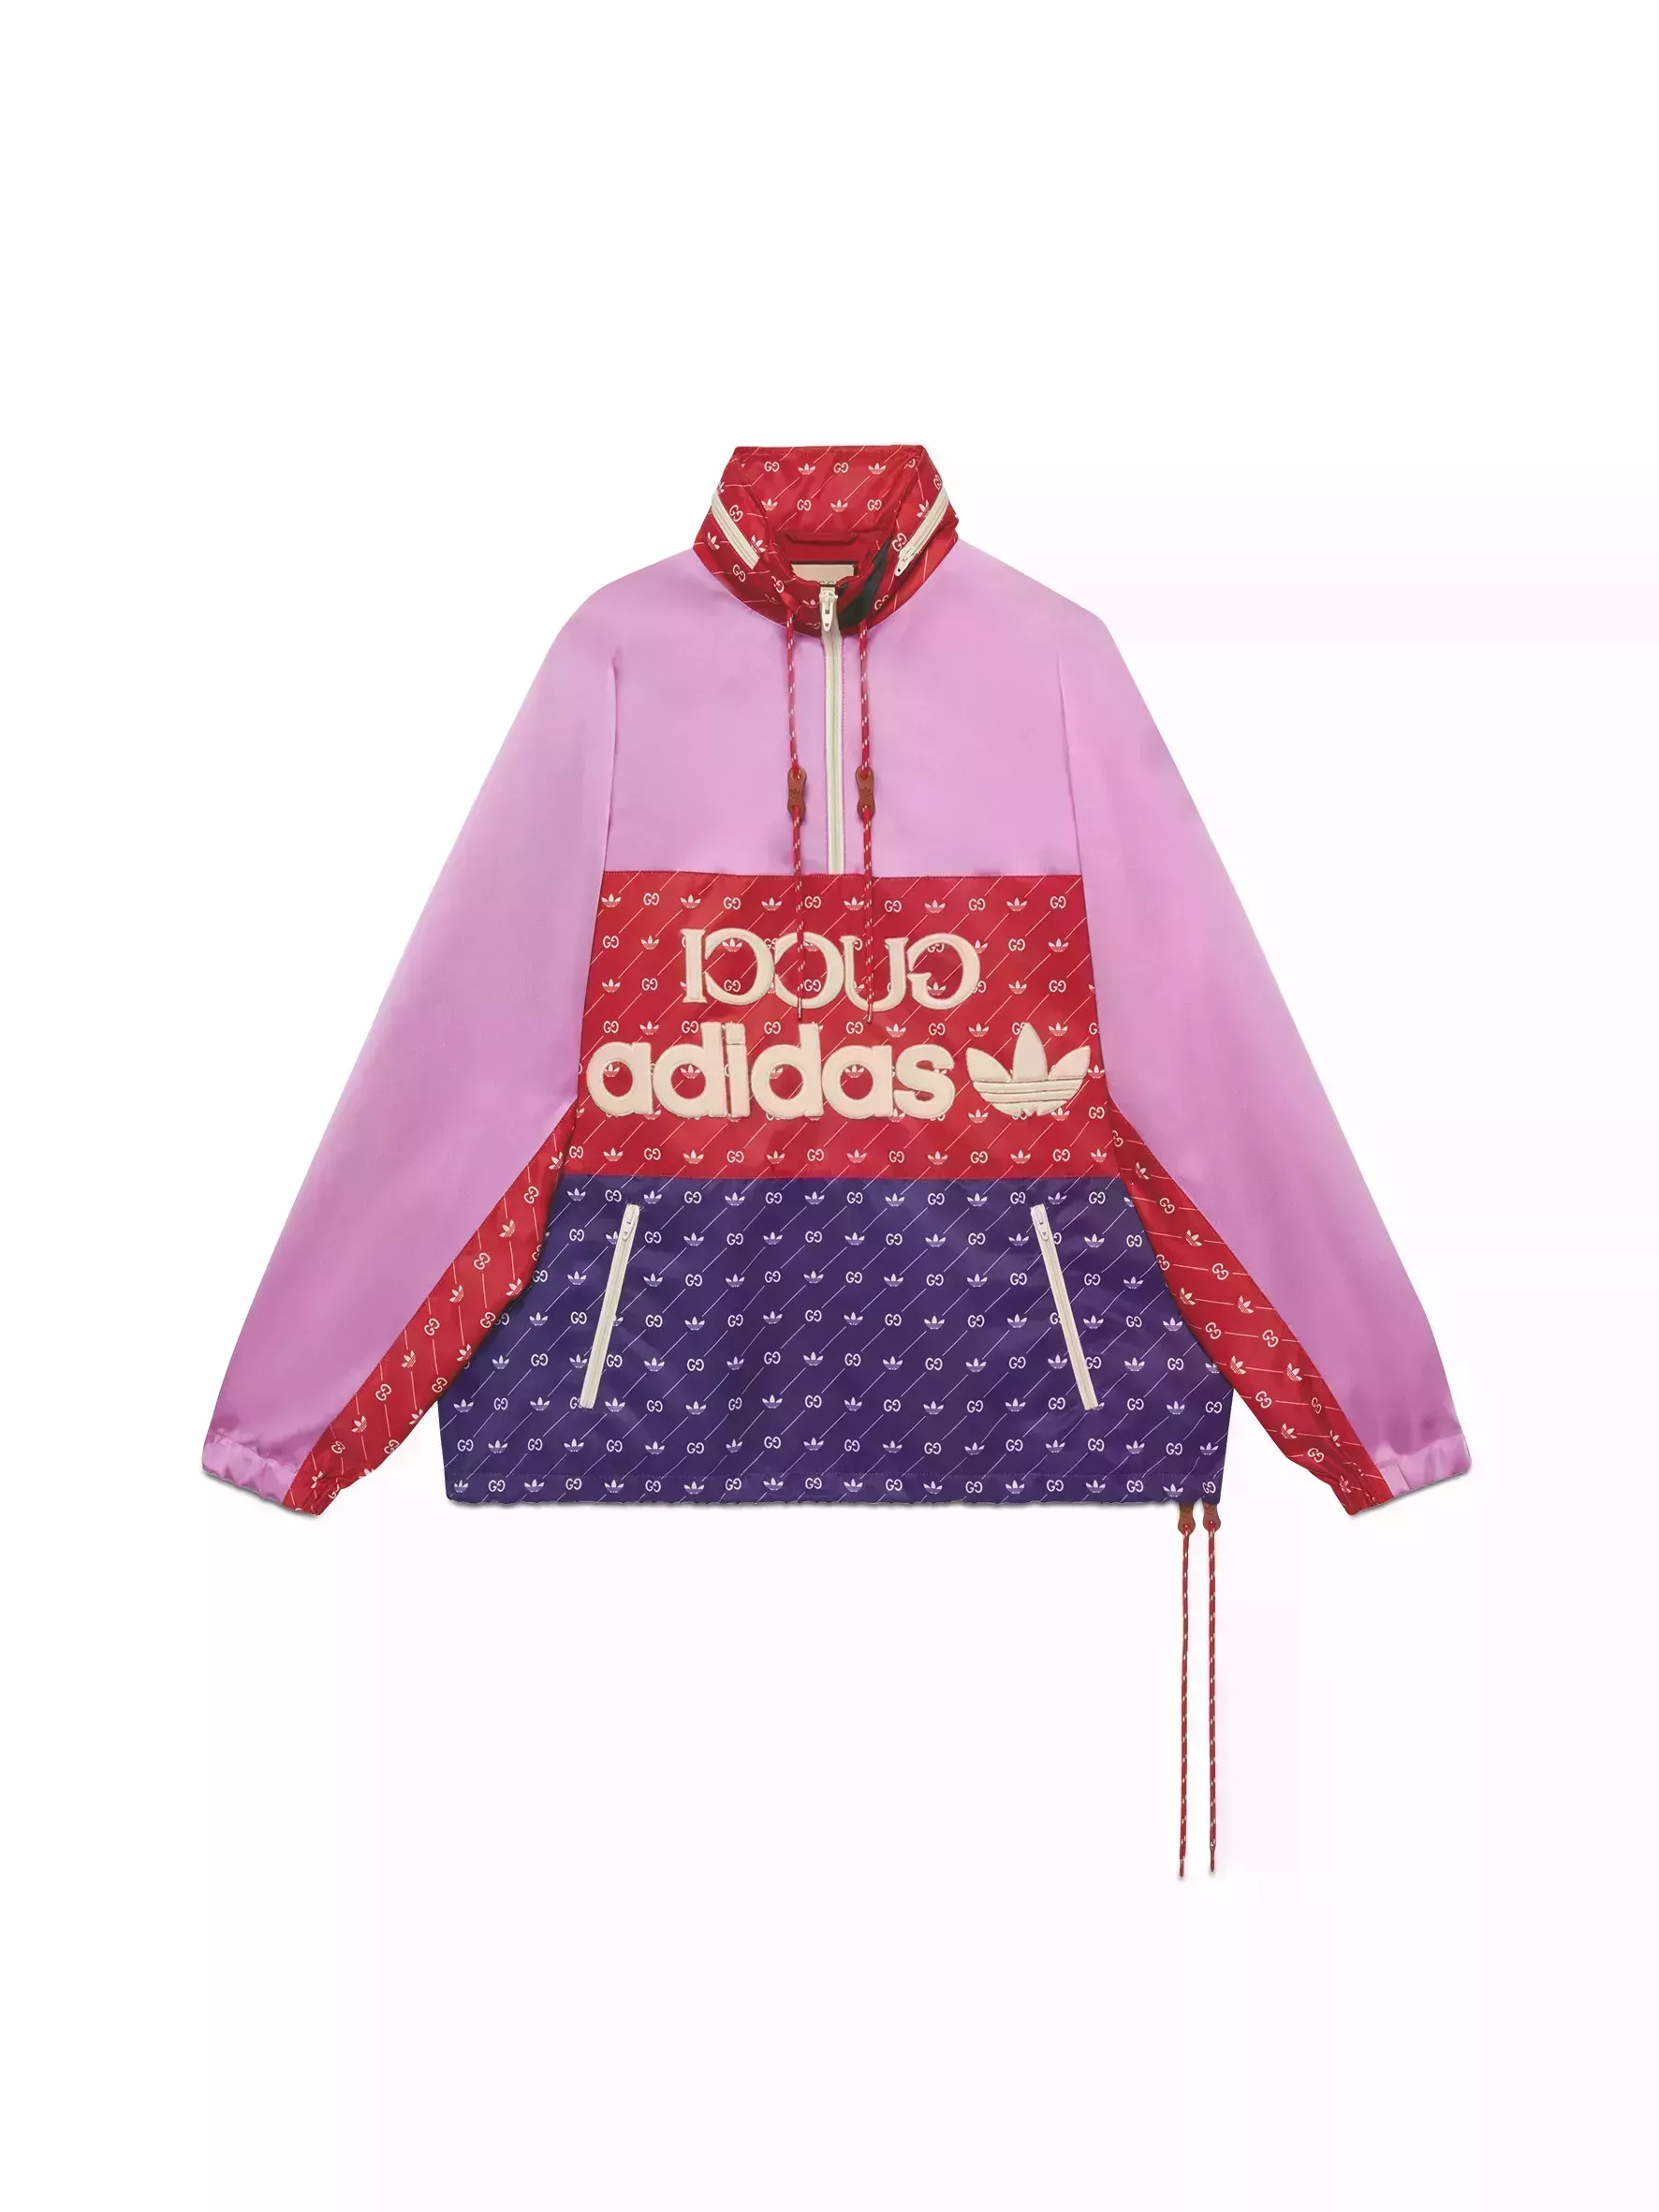 Adidas x Gucci: La prenda que todo el mundo quiere comprar después de verla en Harry Styles